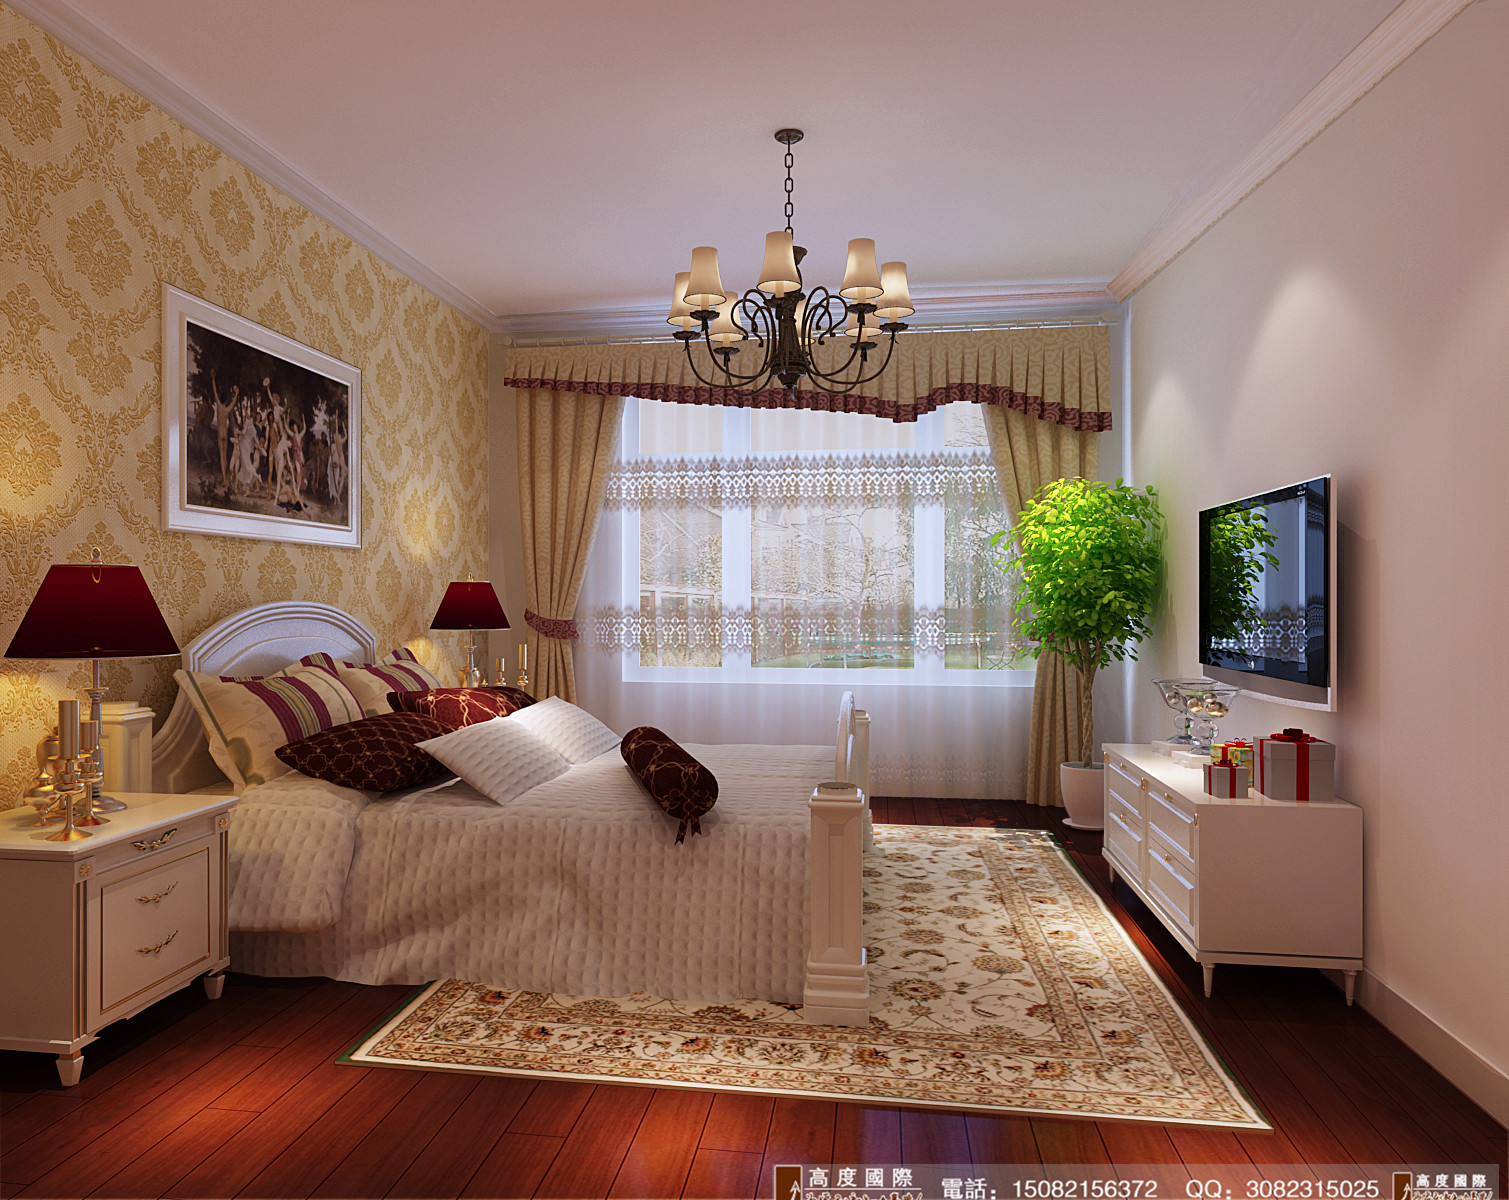 高度国际 卧室图片来自成都高端别墅装修瑞瑞在142简欧风格-成都高度国际的分享